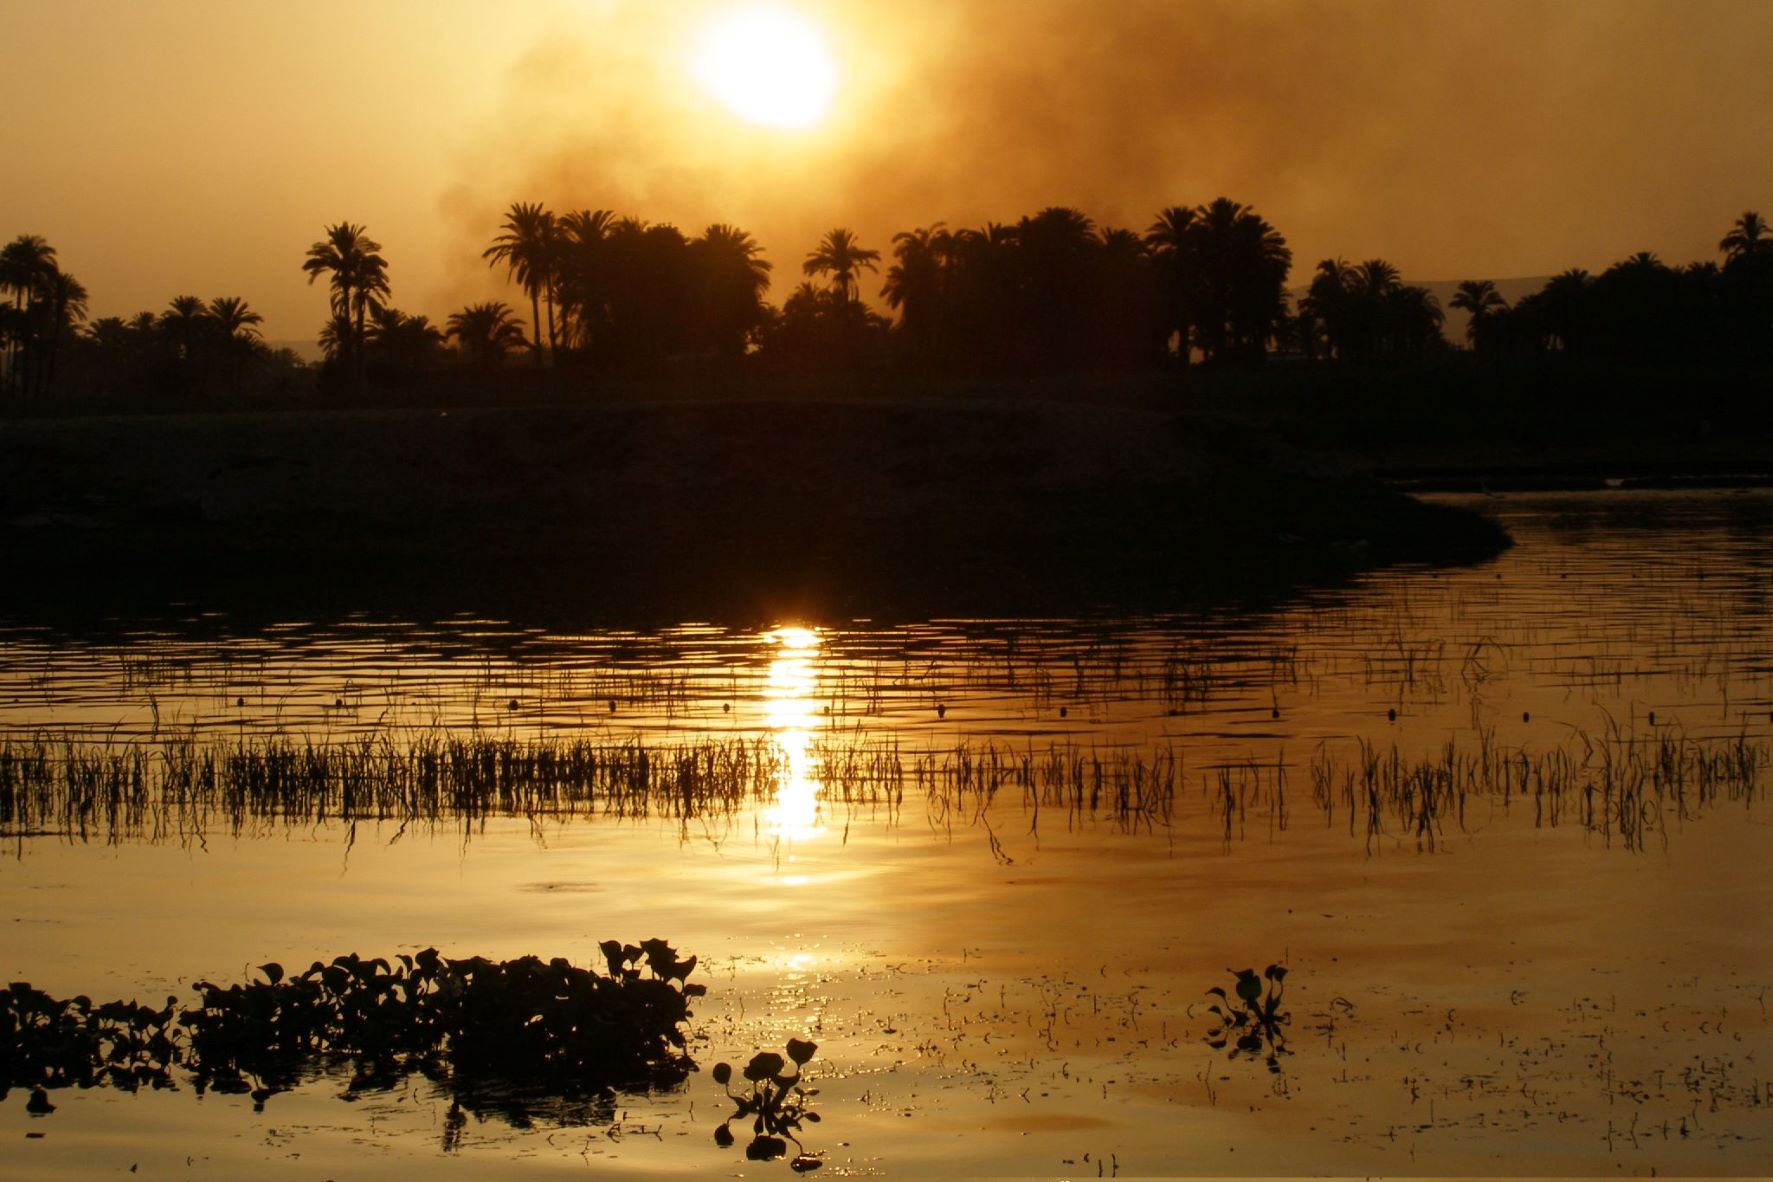 Luxor sun set